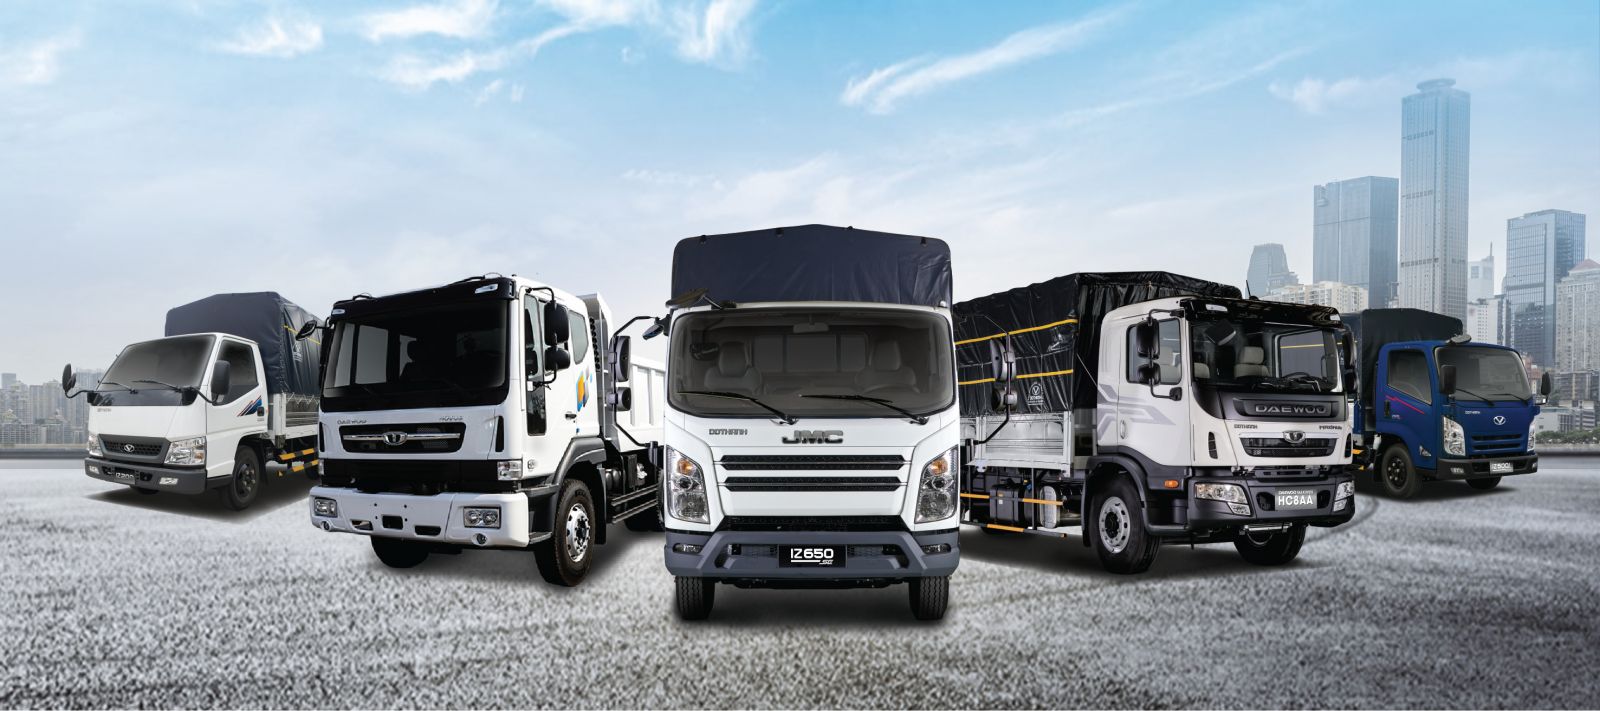 Đô Thành cung cấp nhiều phân khúc xe tải đáp ứng nhu cầu chuyên chở nhiều loại hàng